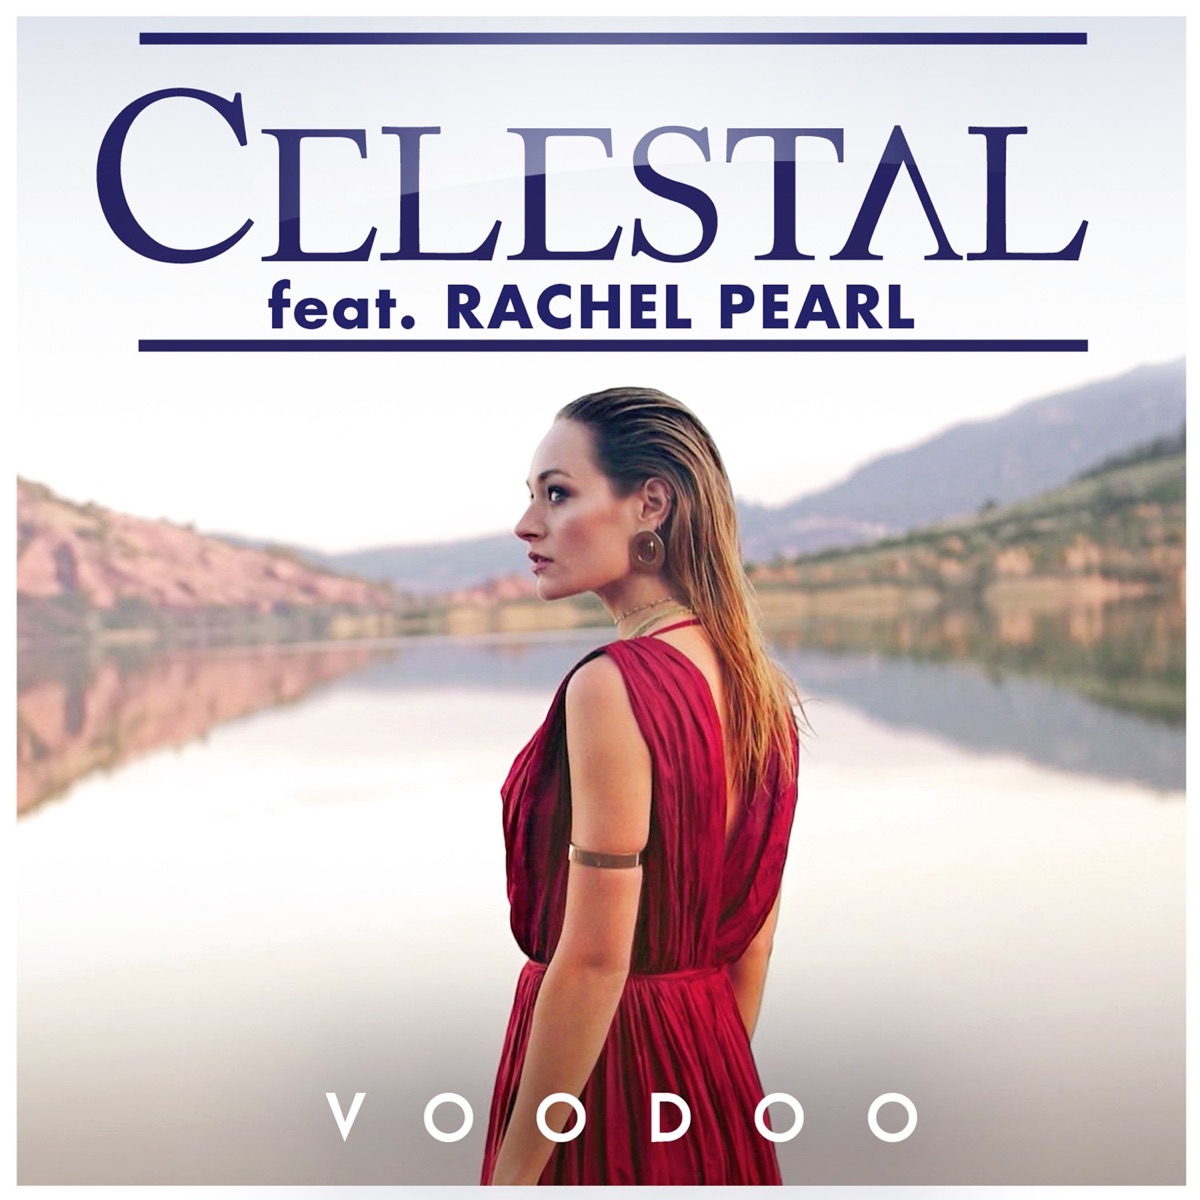 Celestal featuring Rachel Pearl — Voodoo cover artwork